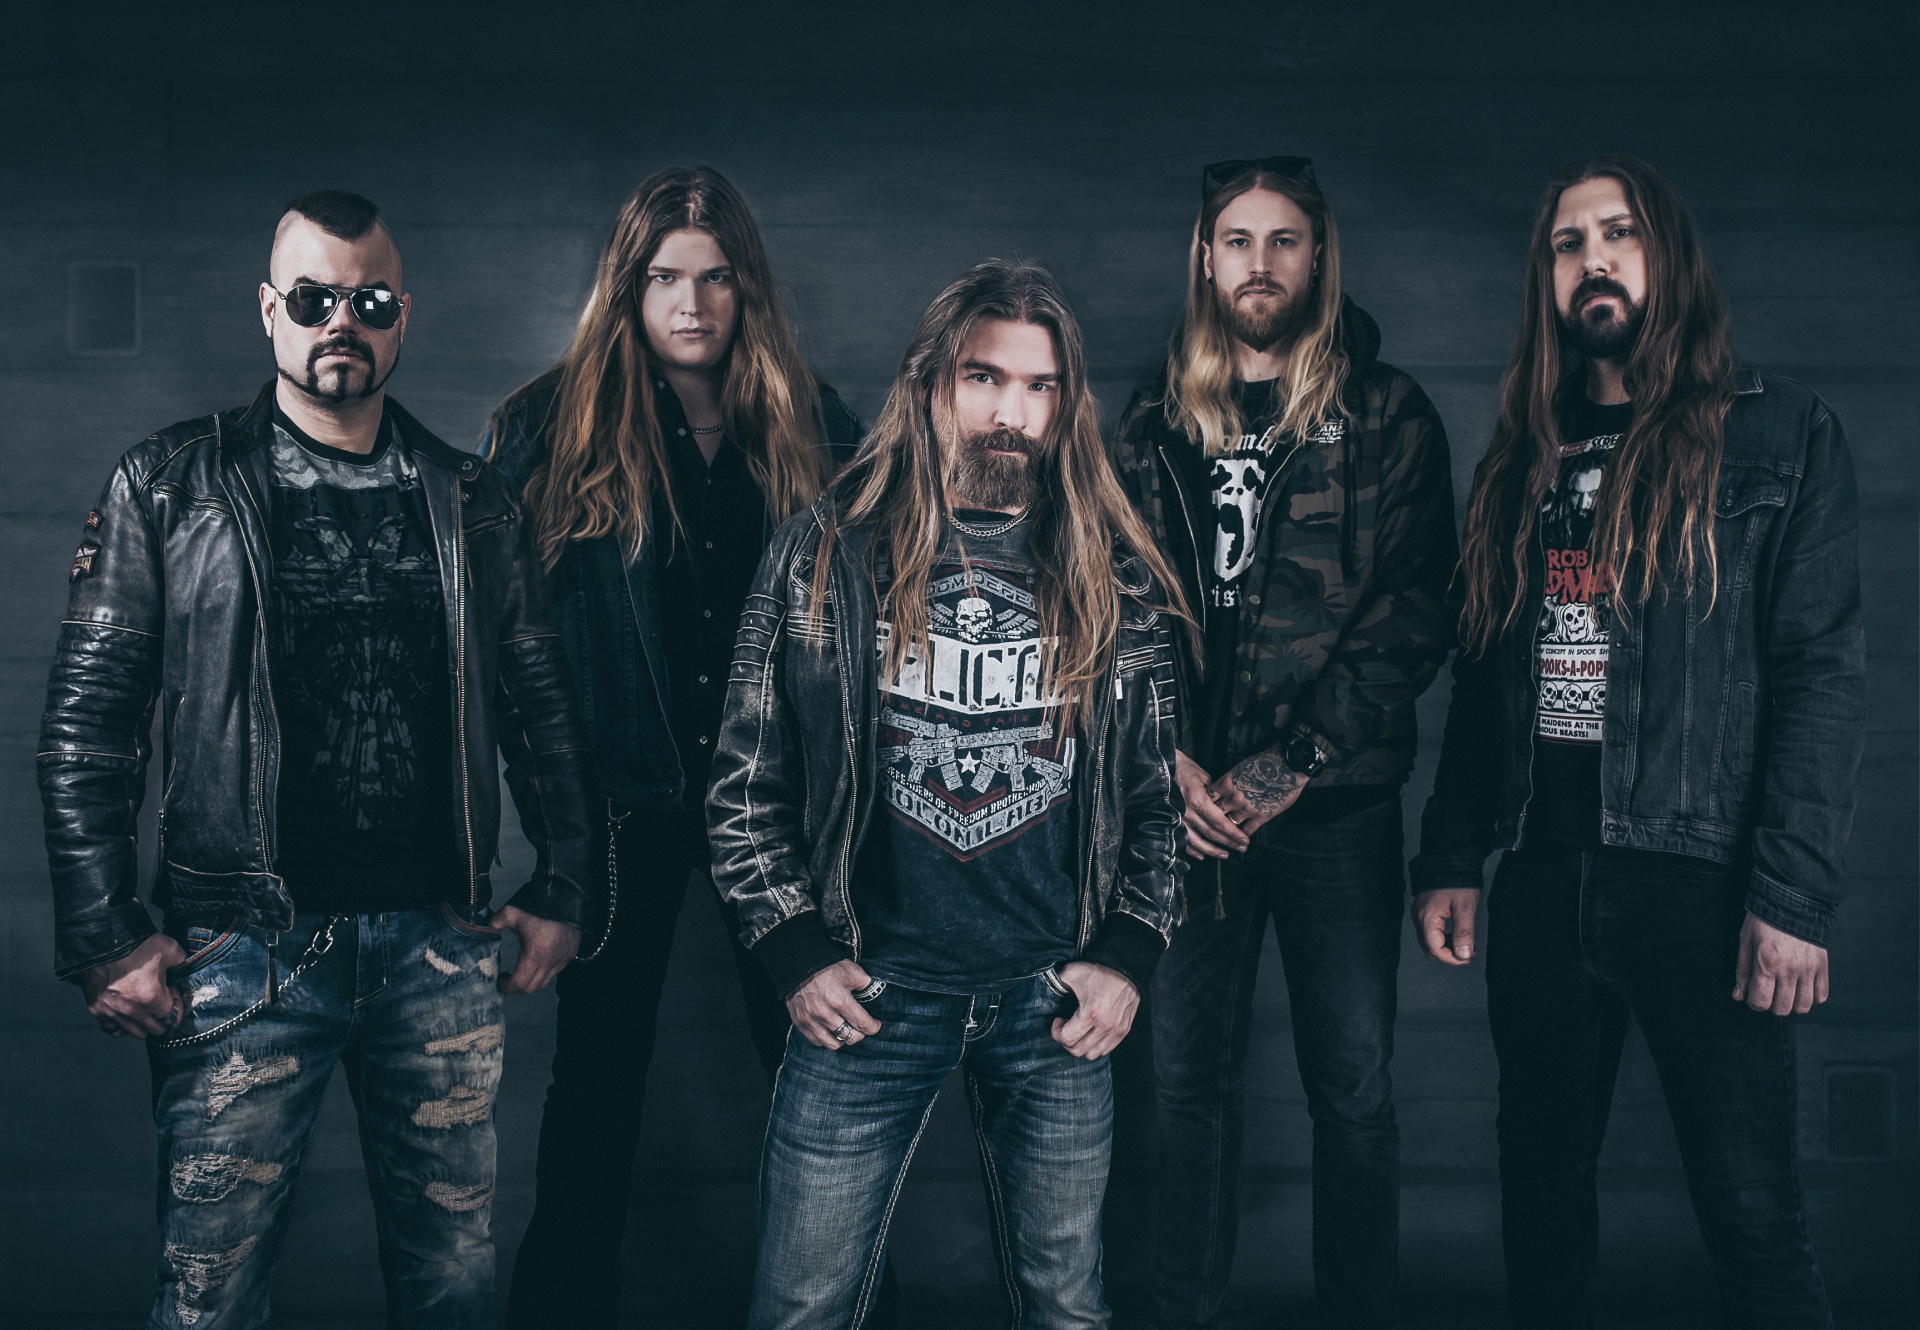 Ekskluzivni hrvatski nastup švedske metal senzacije Sabaton ovog petka u Opatiji